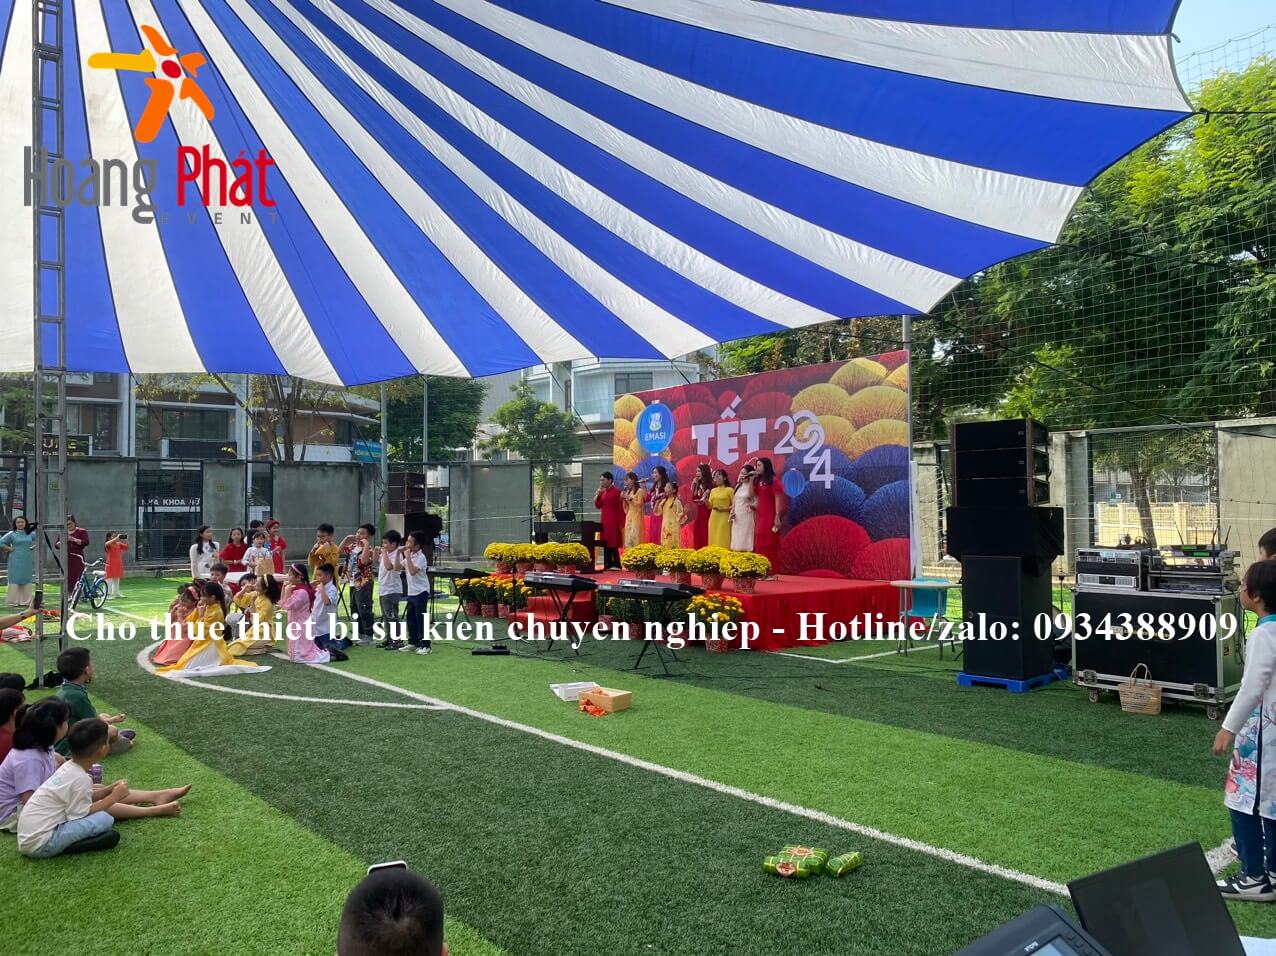 Cho thuê sân khấu tại Phan Thiết, Mũi Né- Bình Thuận 